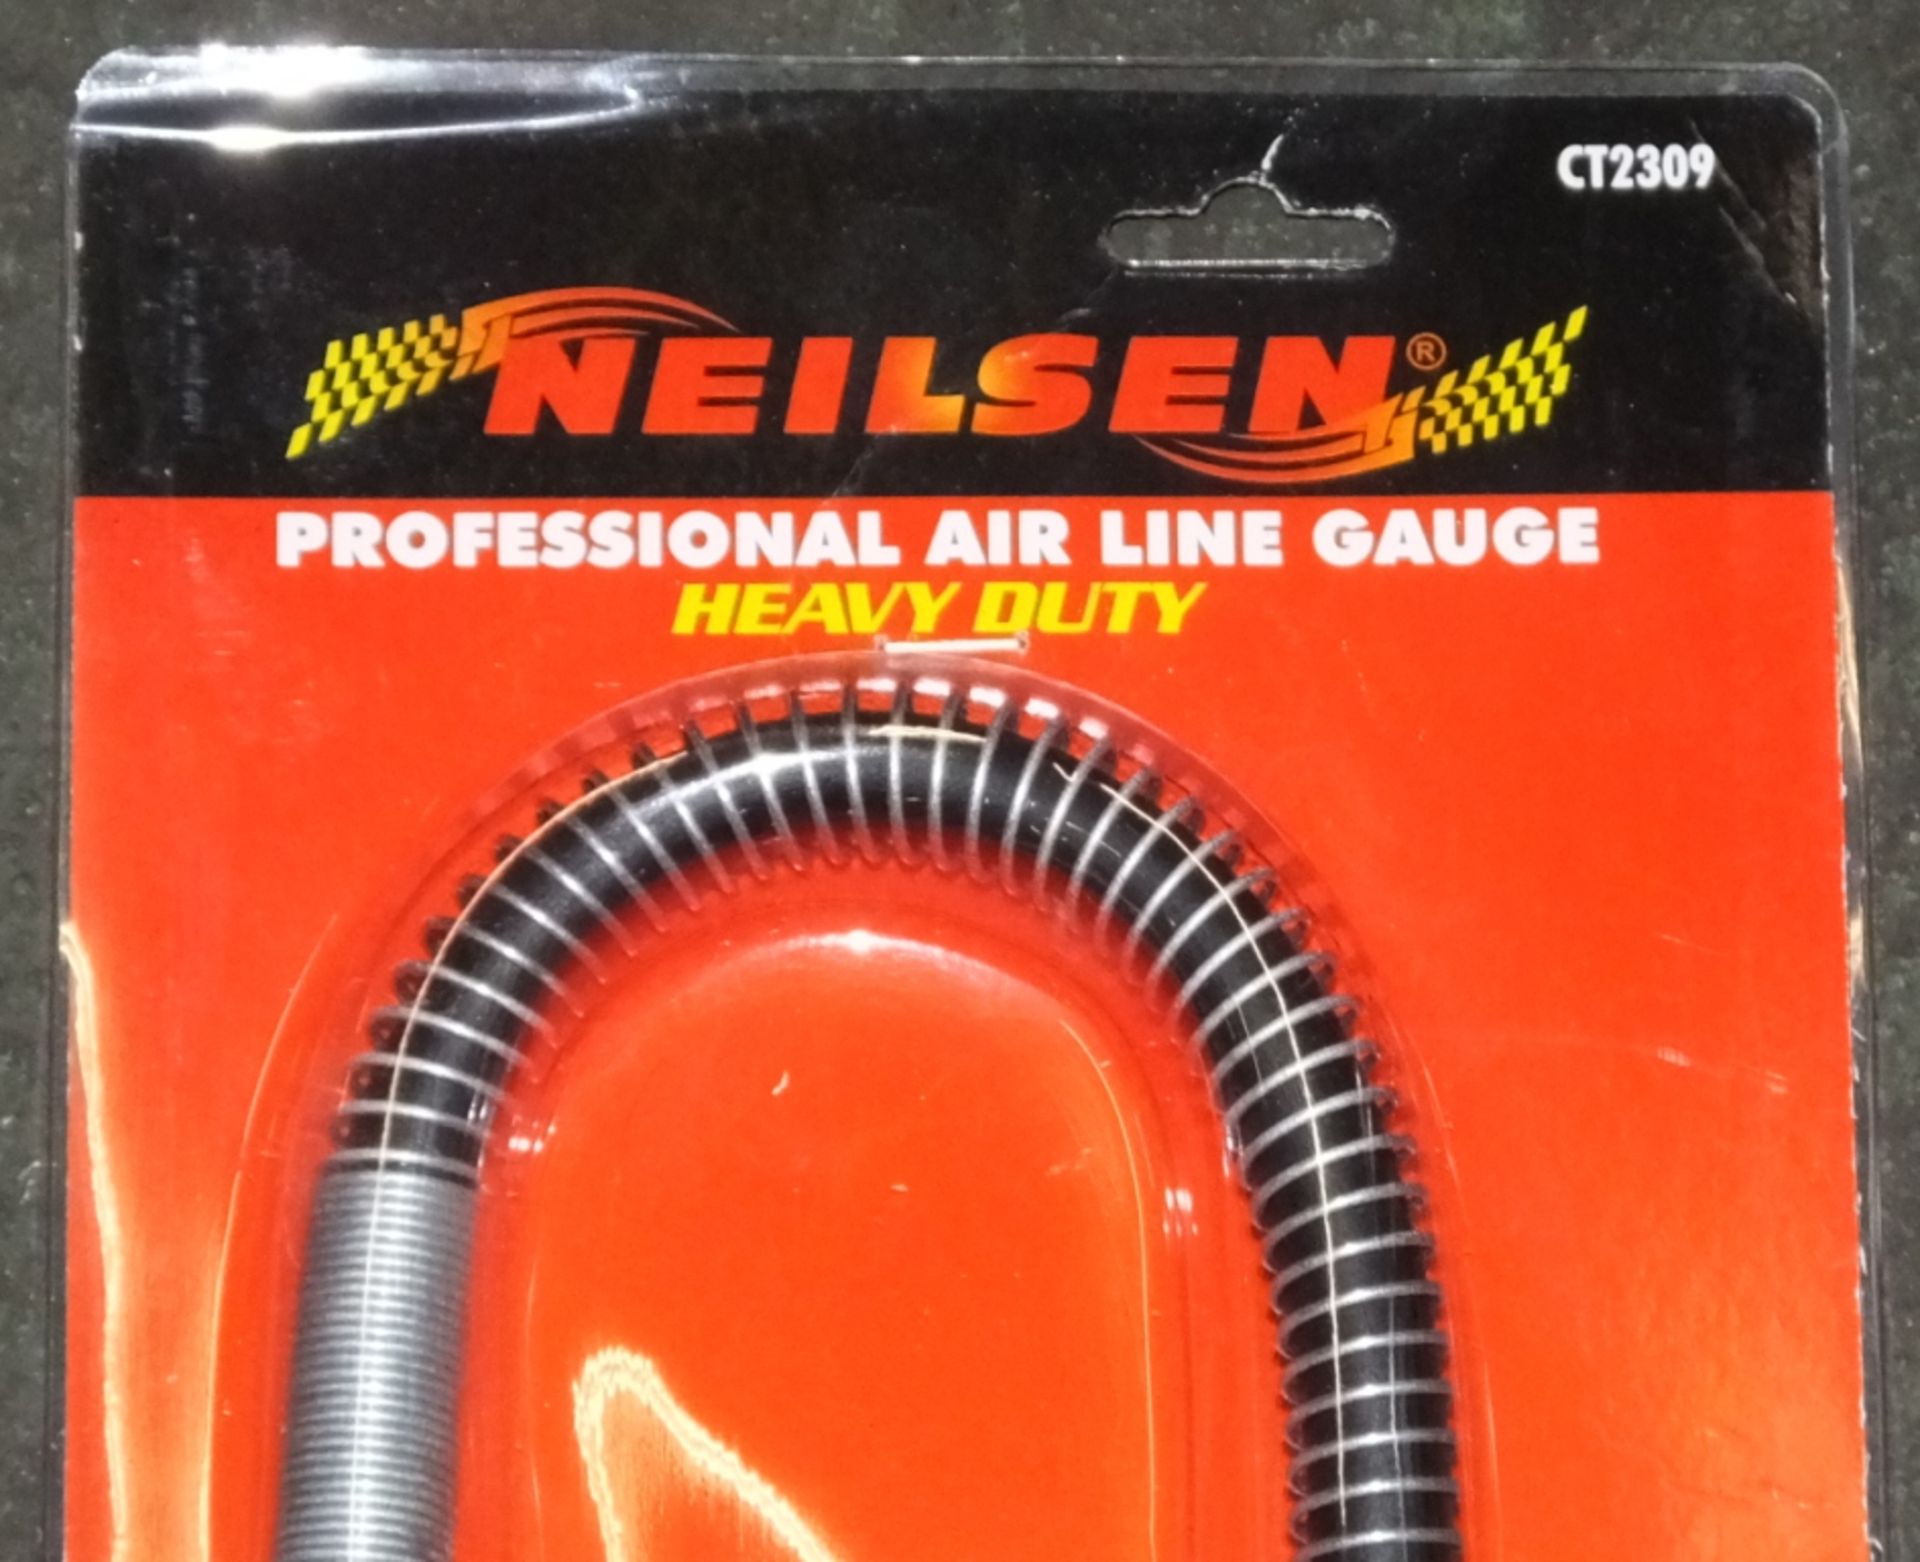 Neilsen CT2309 Air Line supply gauge - Bild 2 aus 2